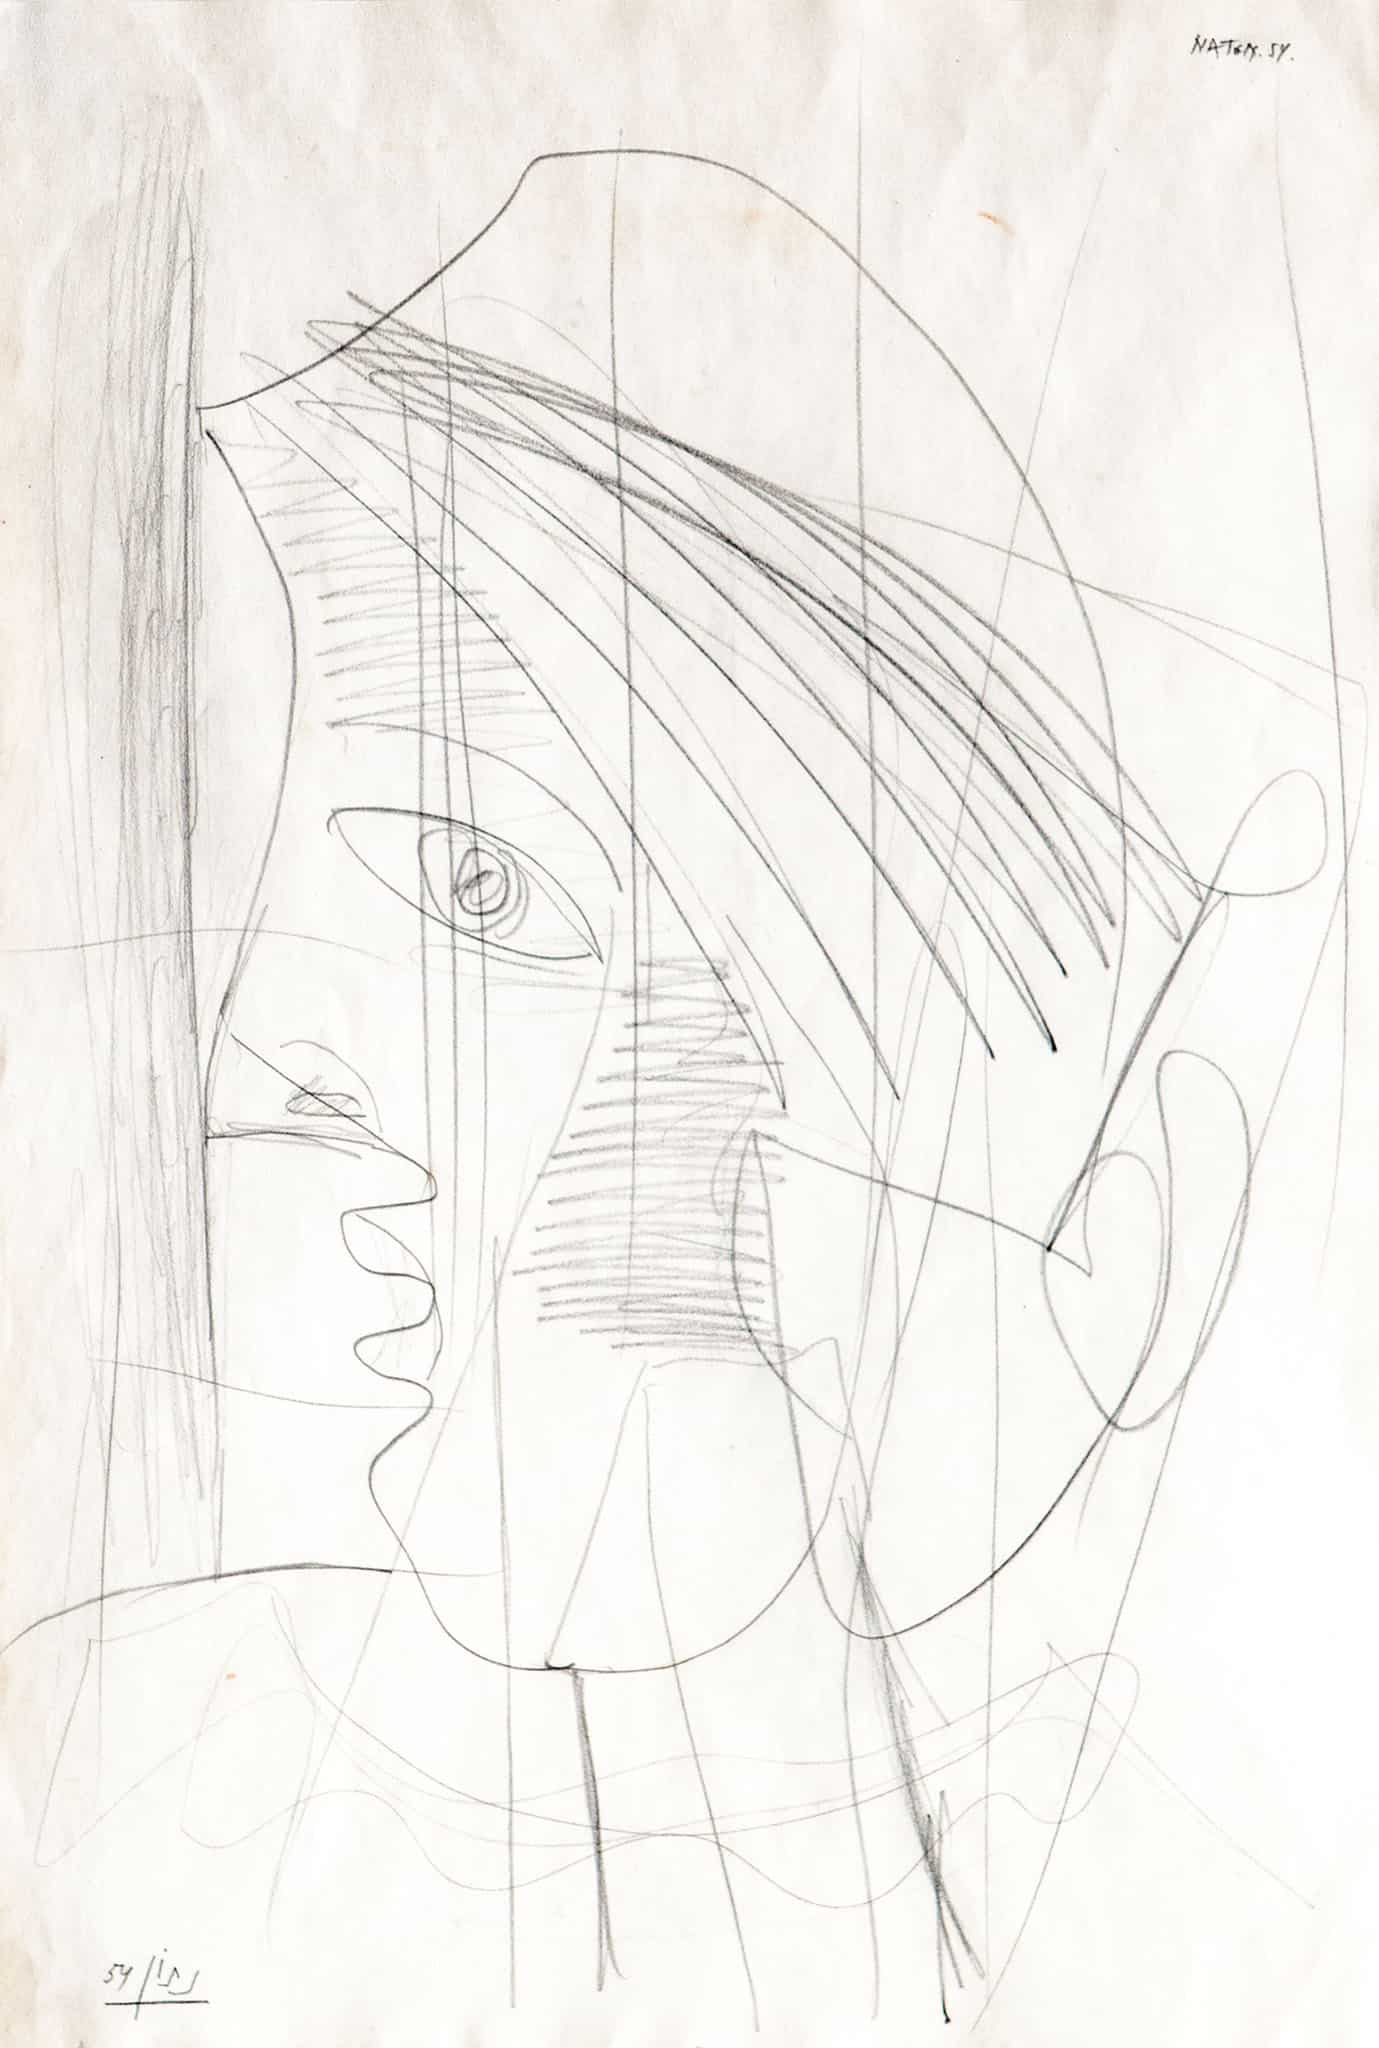 אברהם נתון, "דמות", 1954, עיפרון על נייר, 49x33 ס"מ